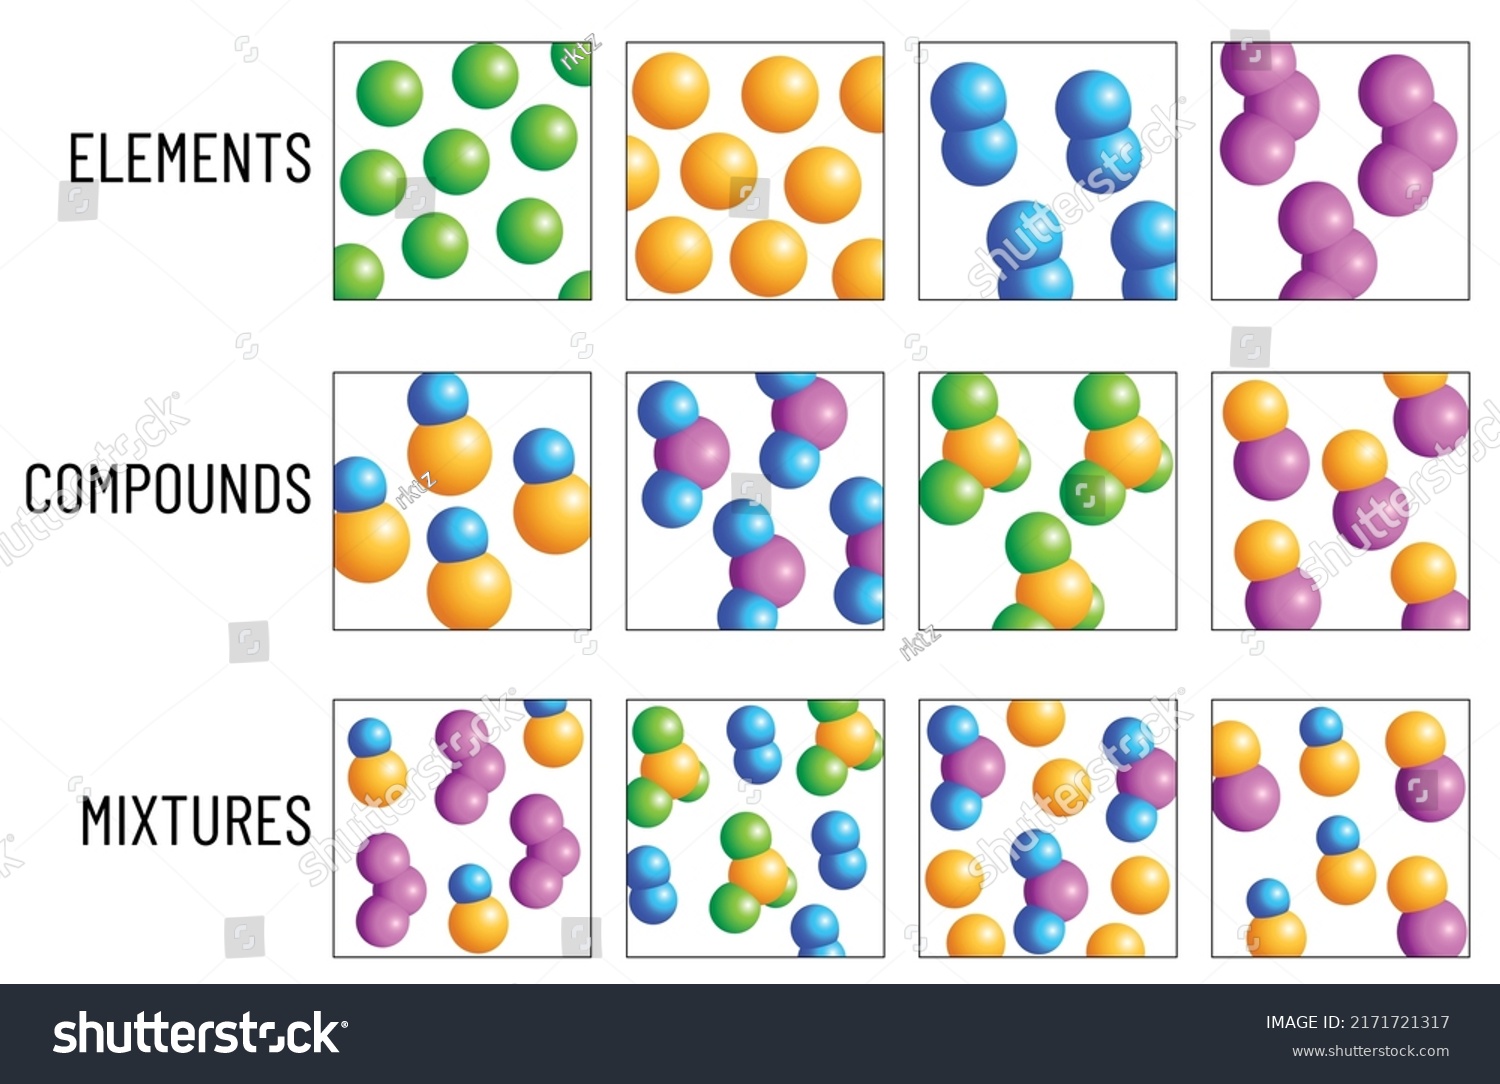 structure of elements vs compounds vs mixtures #2171721317